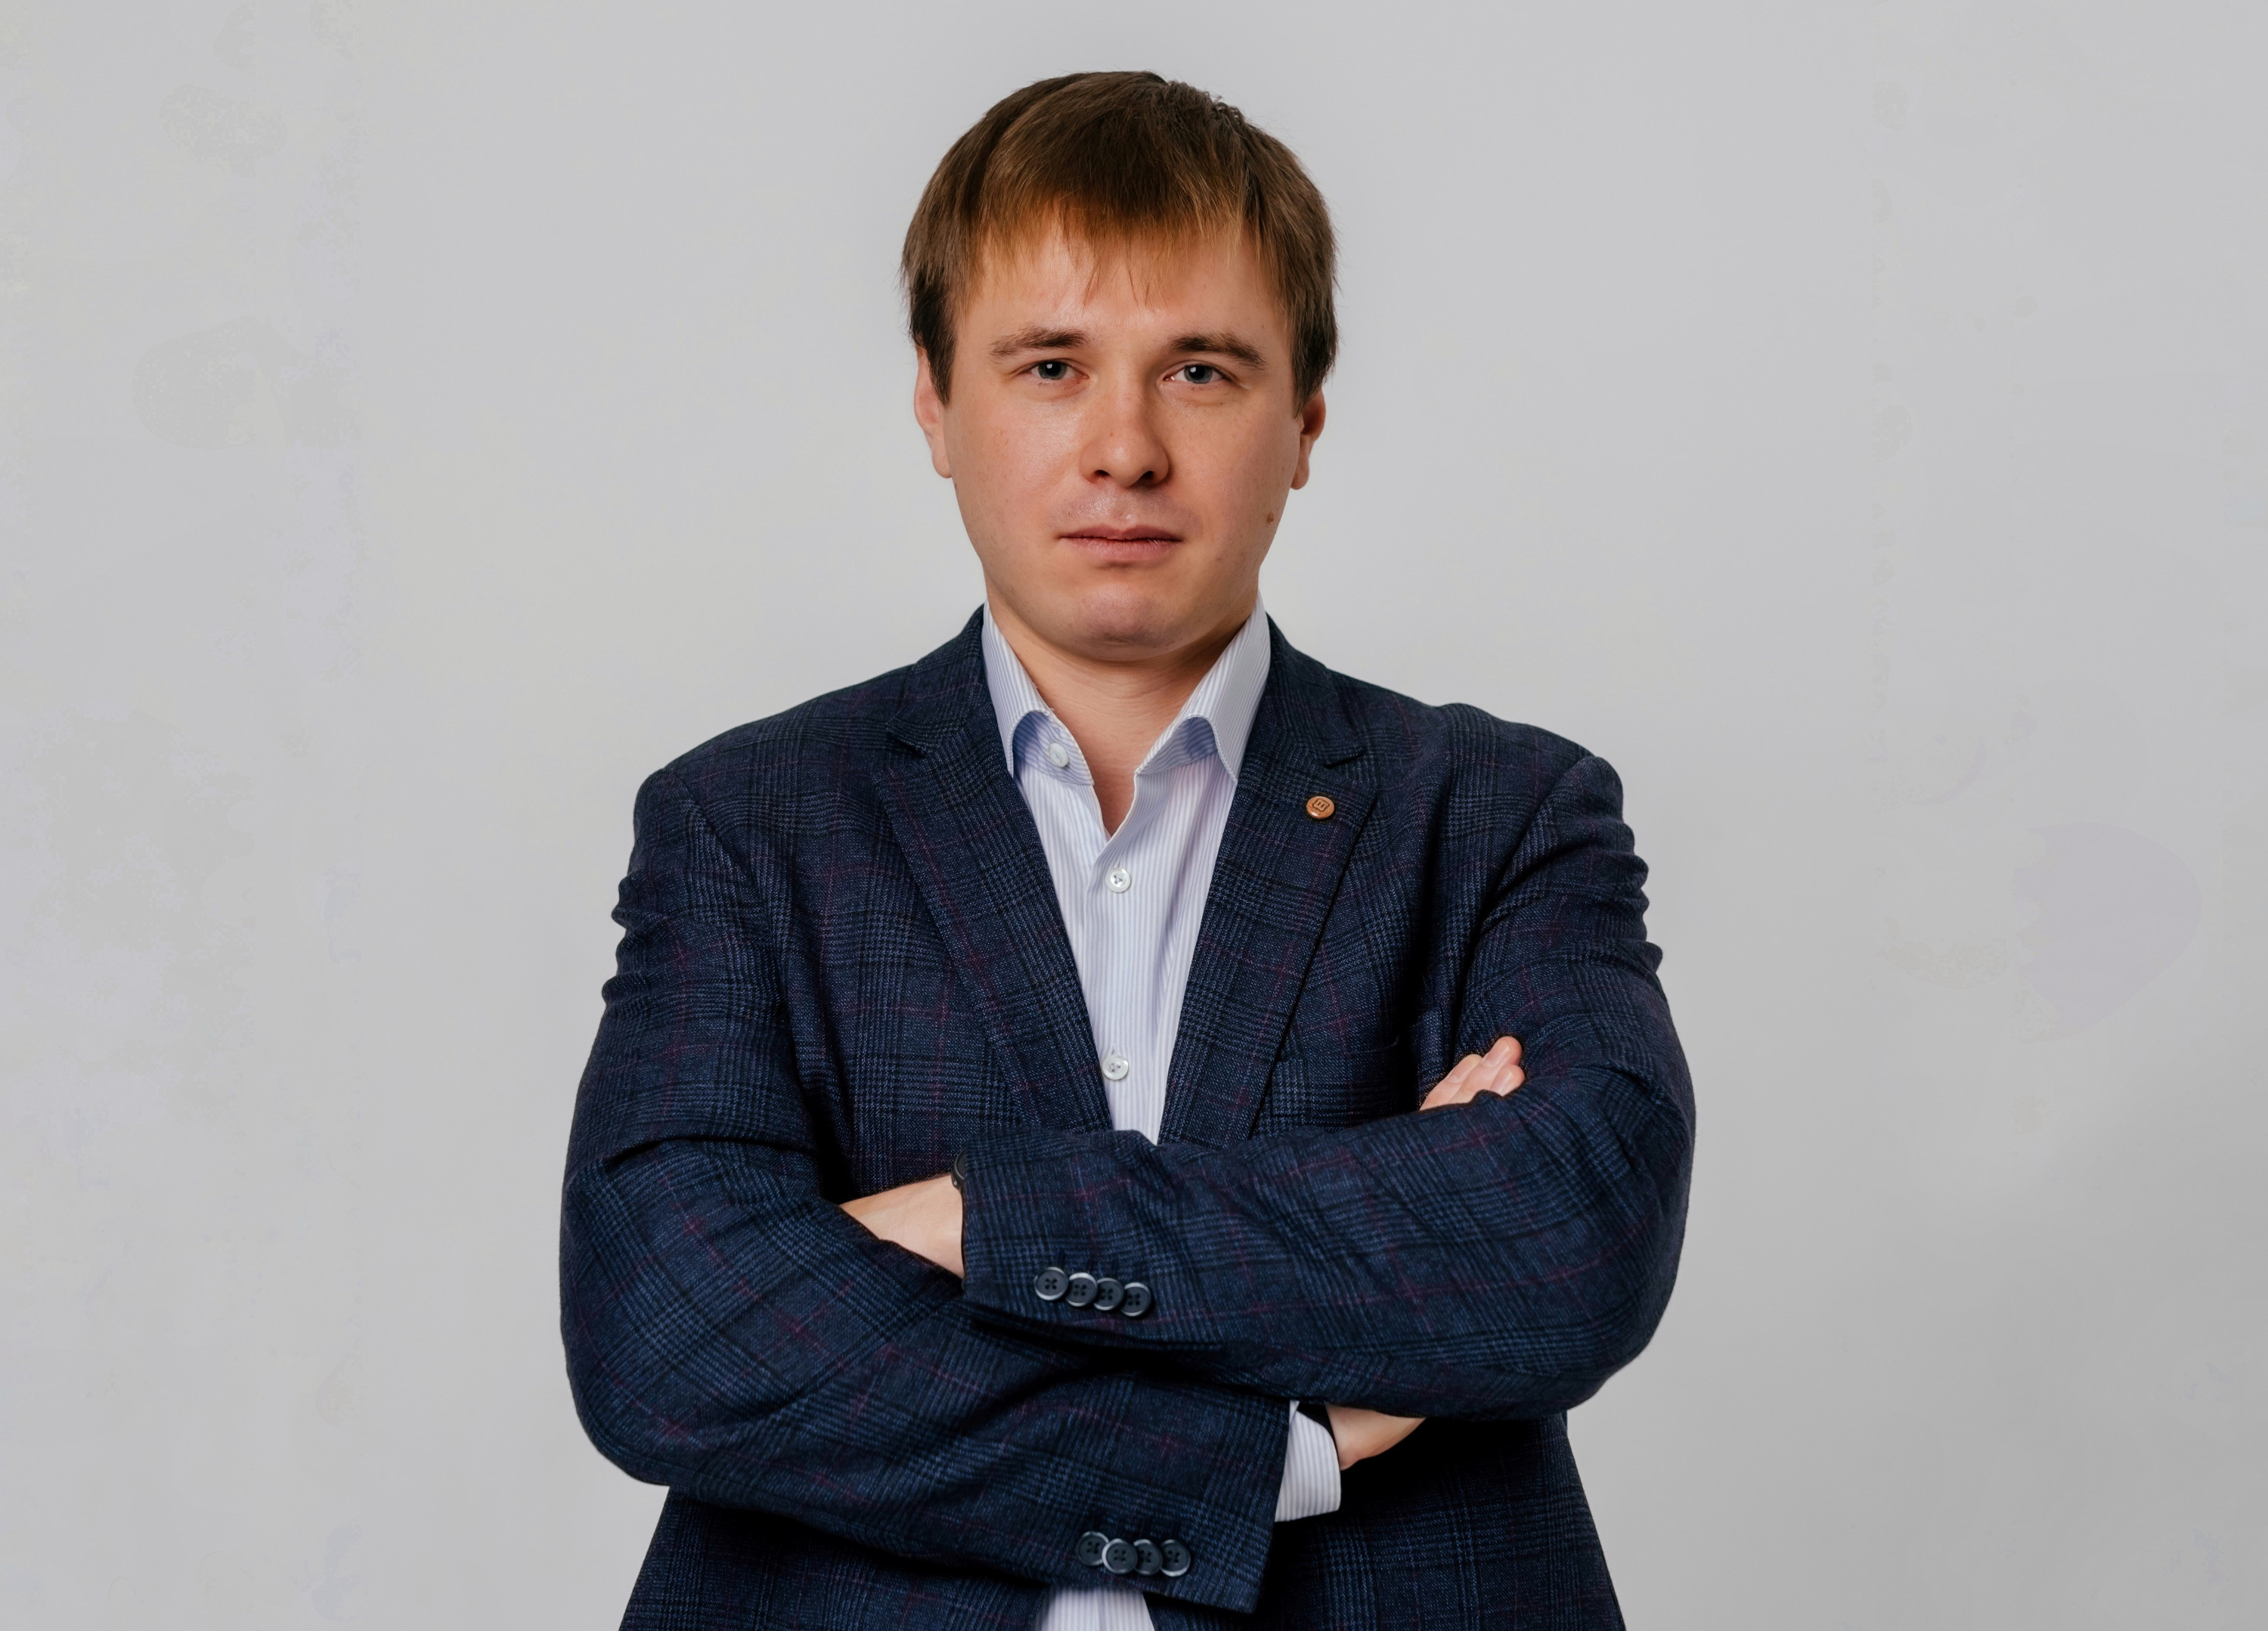 Адвокат Евгений Смирнов — эксперт по преступлениям, связанным с госизменой и шпионажем